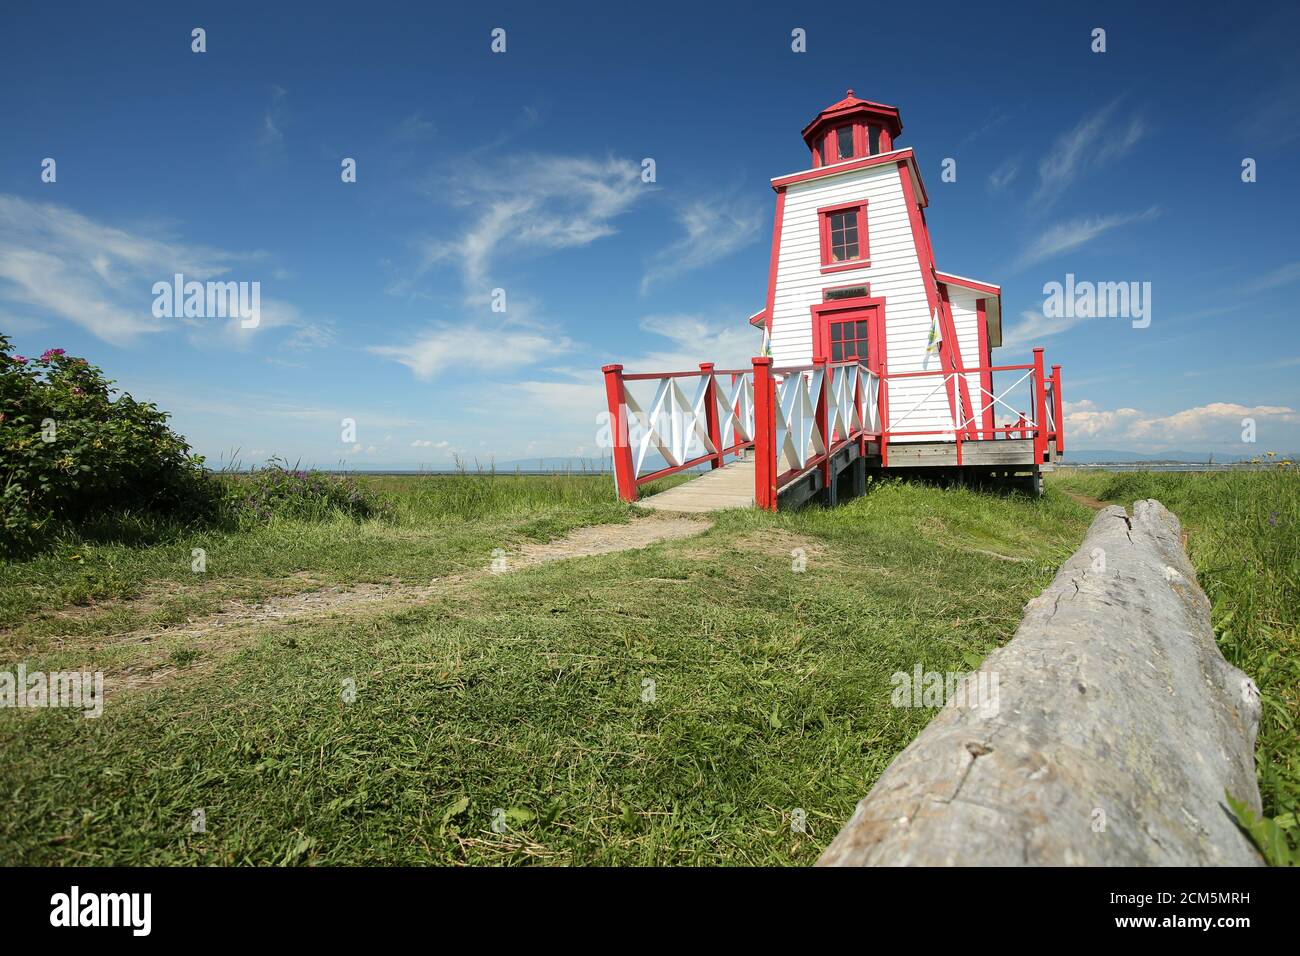 Phare de St-André-de-Kamouraska lighthouse on the shore of St-Laurence river, Bas St-Laurent. Stock Photo